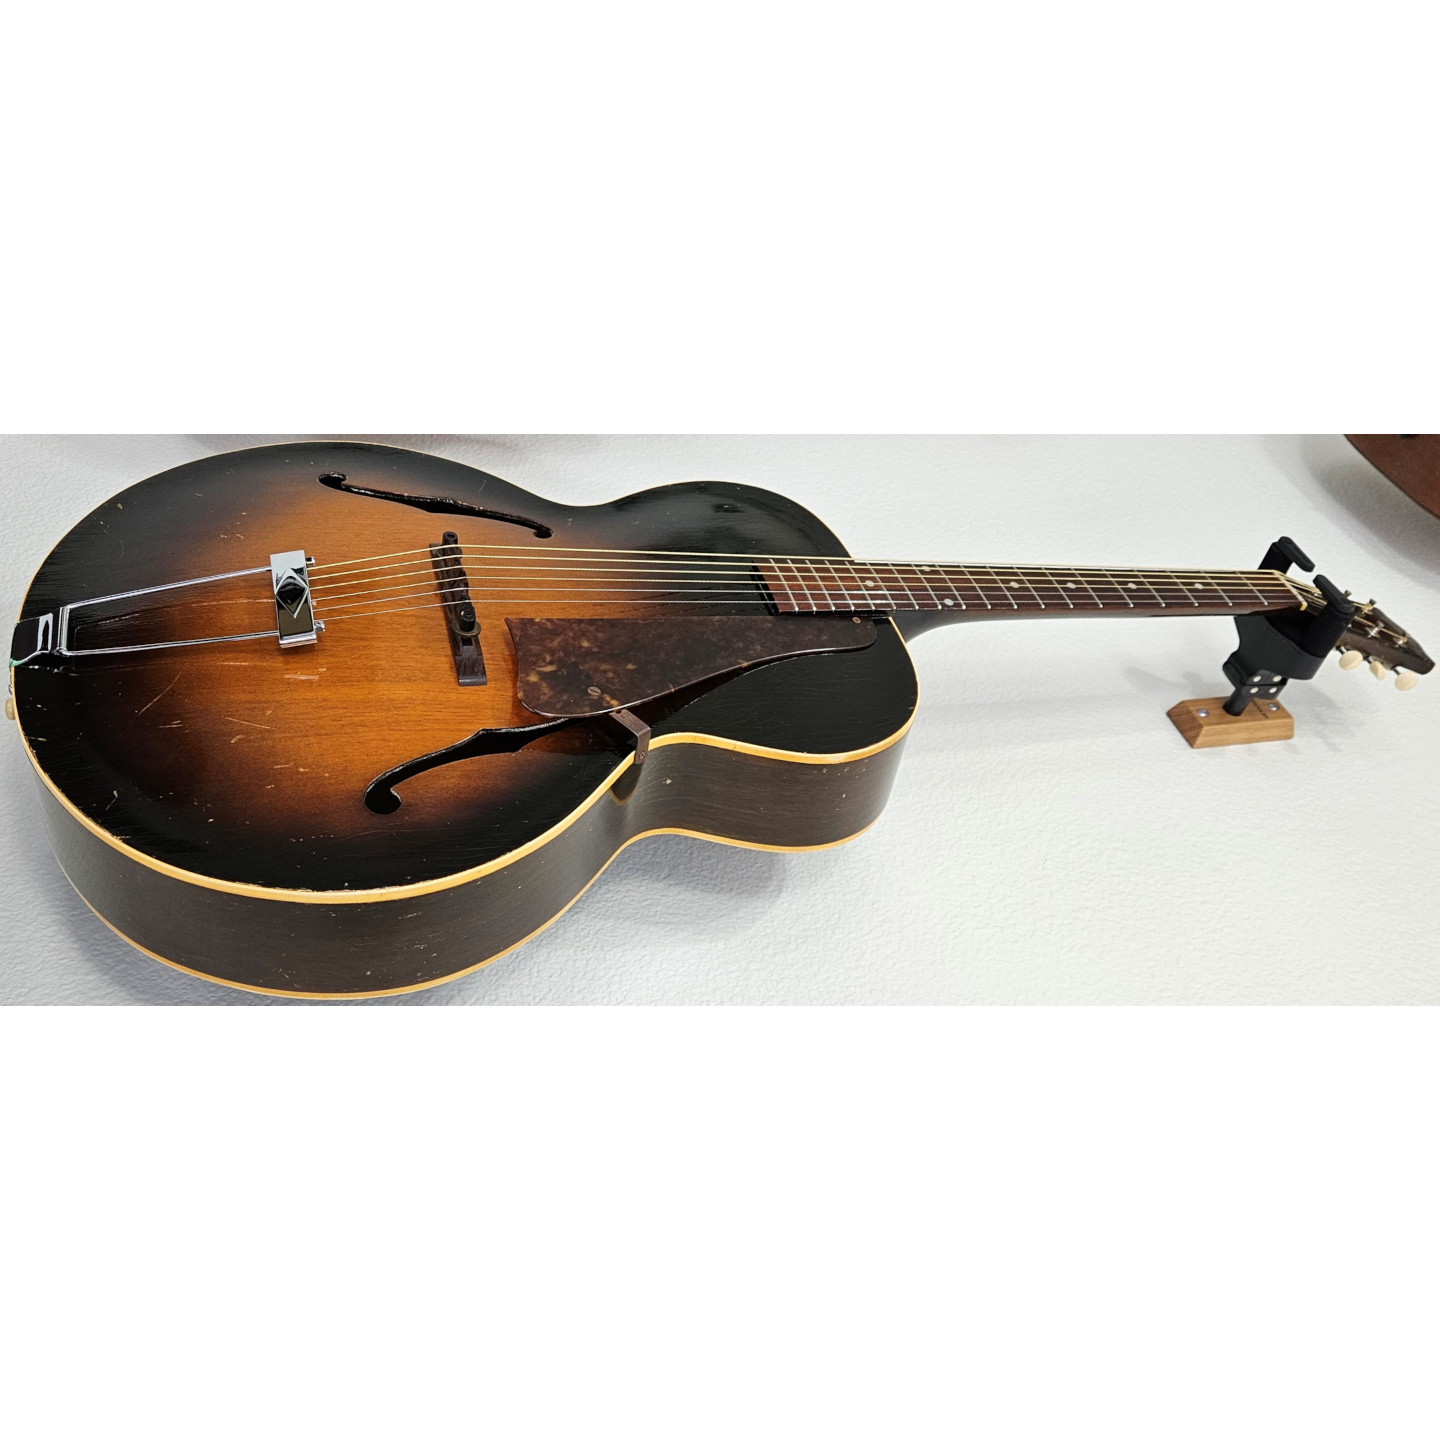 1958 Gibson L-48 Sunburst Archtop Vintage Acoustic Guitar